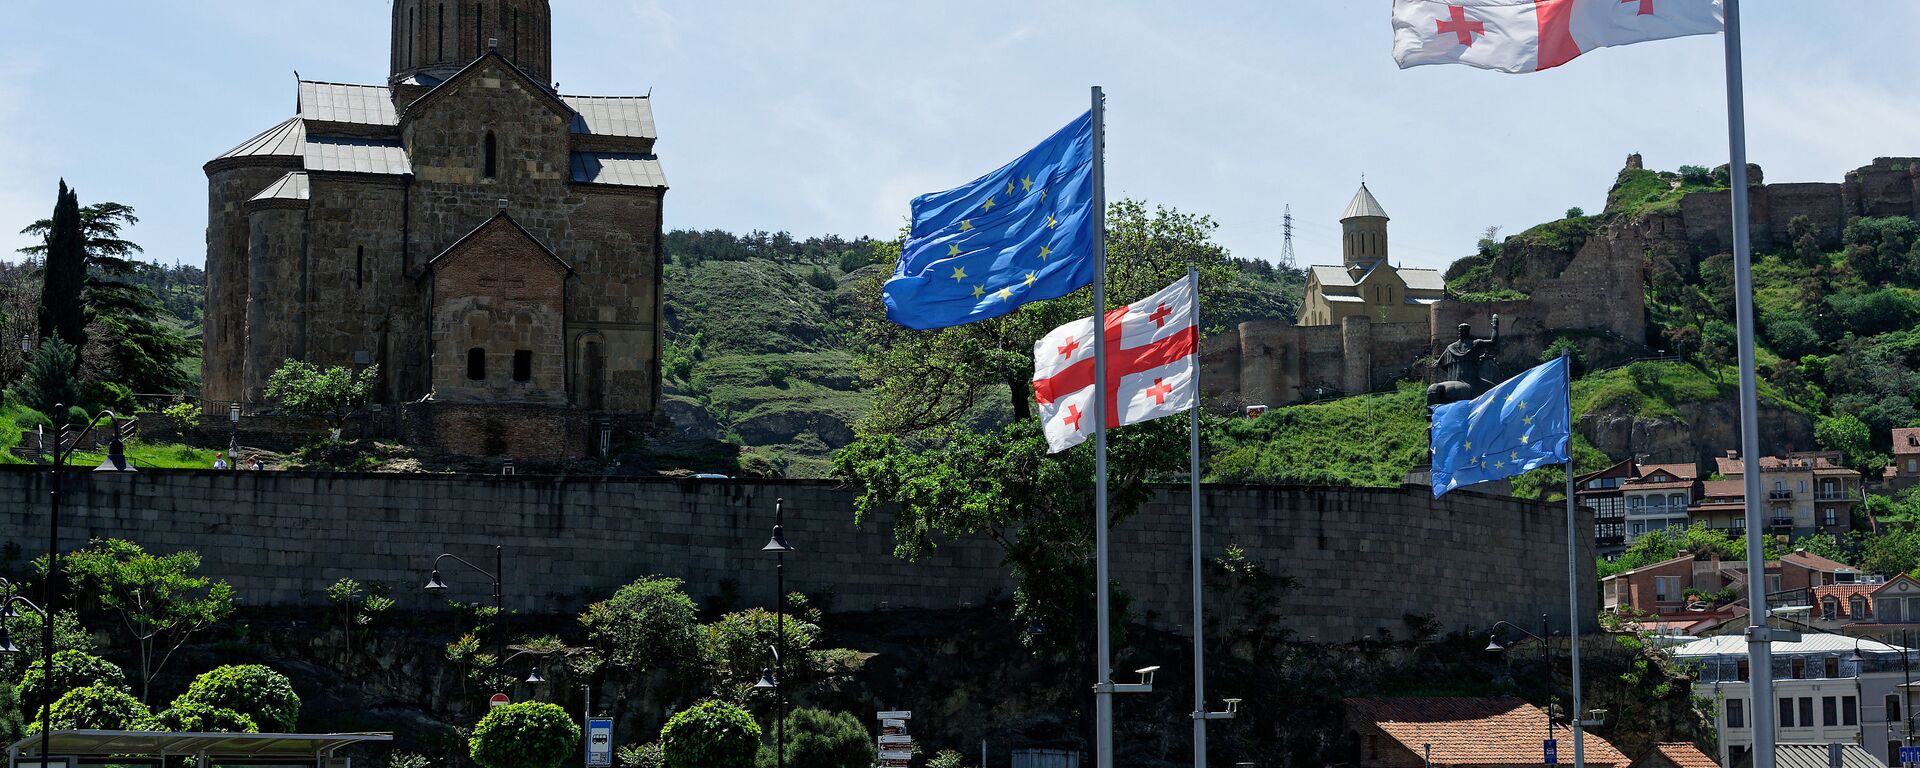  Вид на город Тбилиси - Метехская церковь и площадь Европы, флаги ЕС и Грузии - Sputnik Грузия, 1920, 26.05.2021